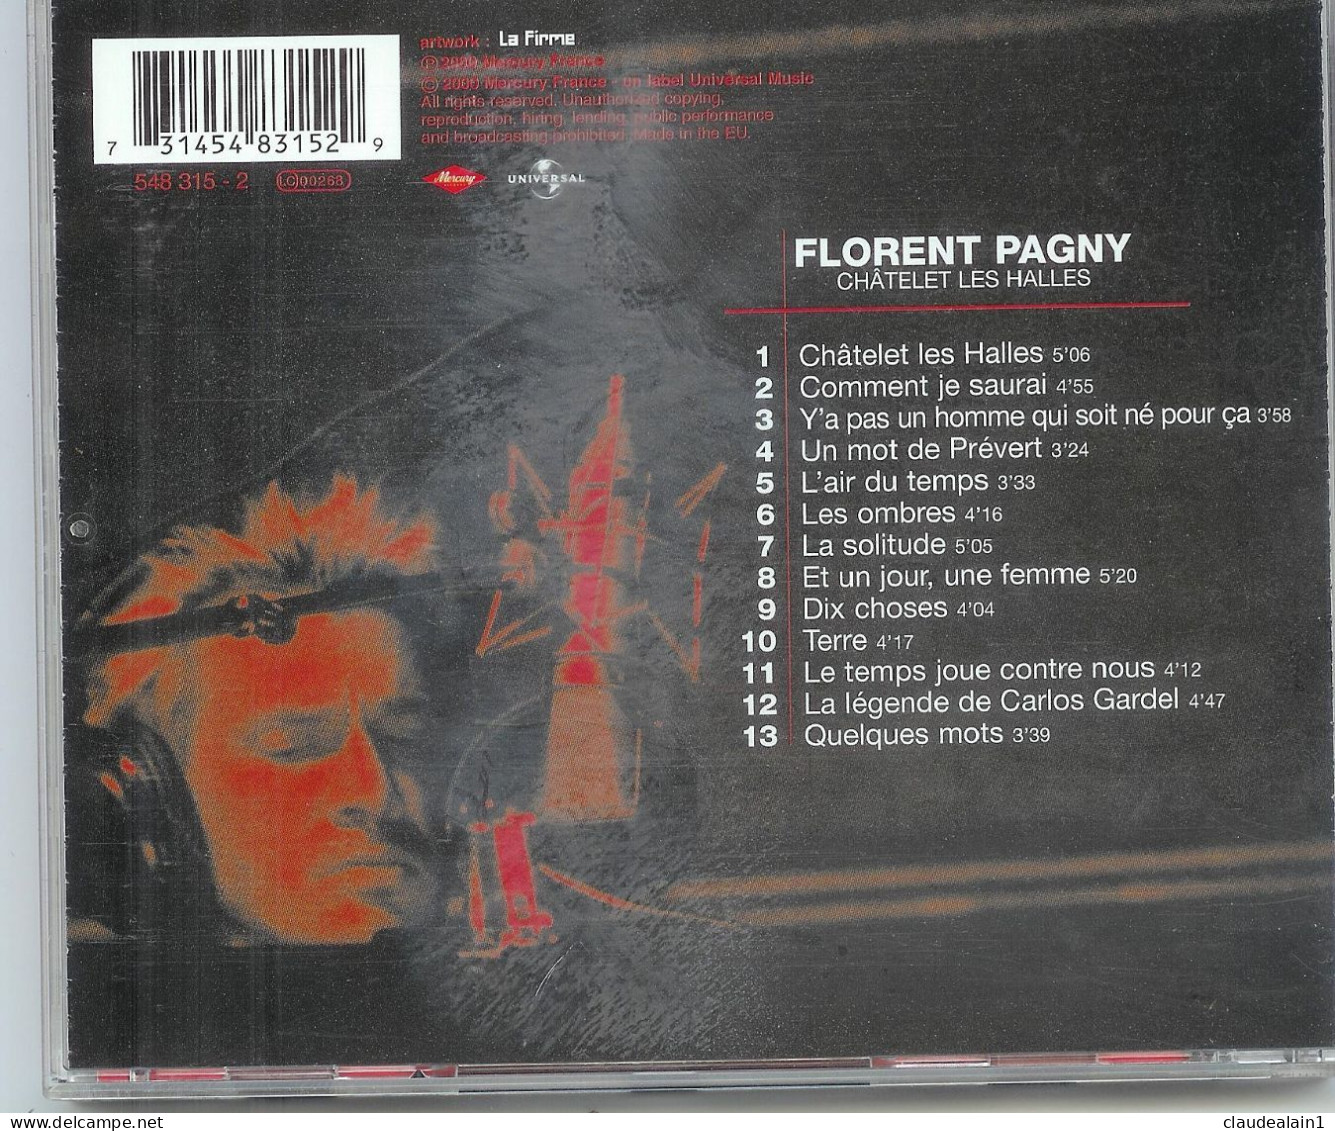 ALBUM CD FLORENT PAGNY - CHATELET LES HALLES (13 Titres) - Très Bon état - Autres - Musique Française